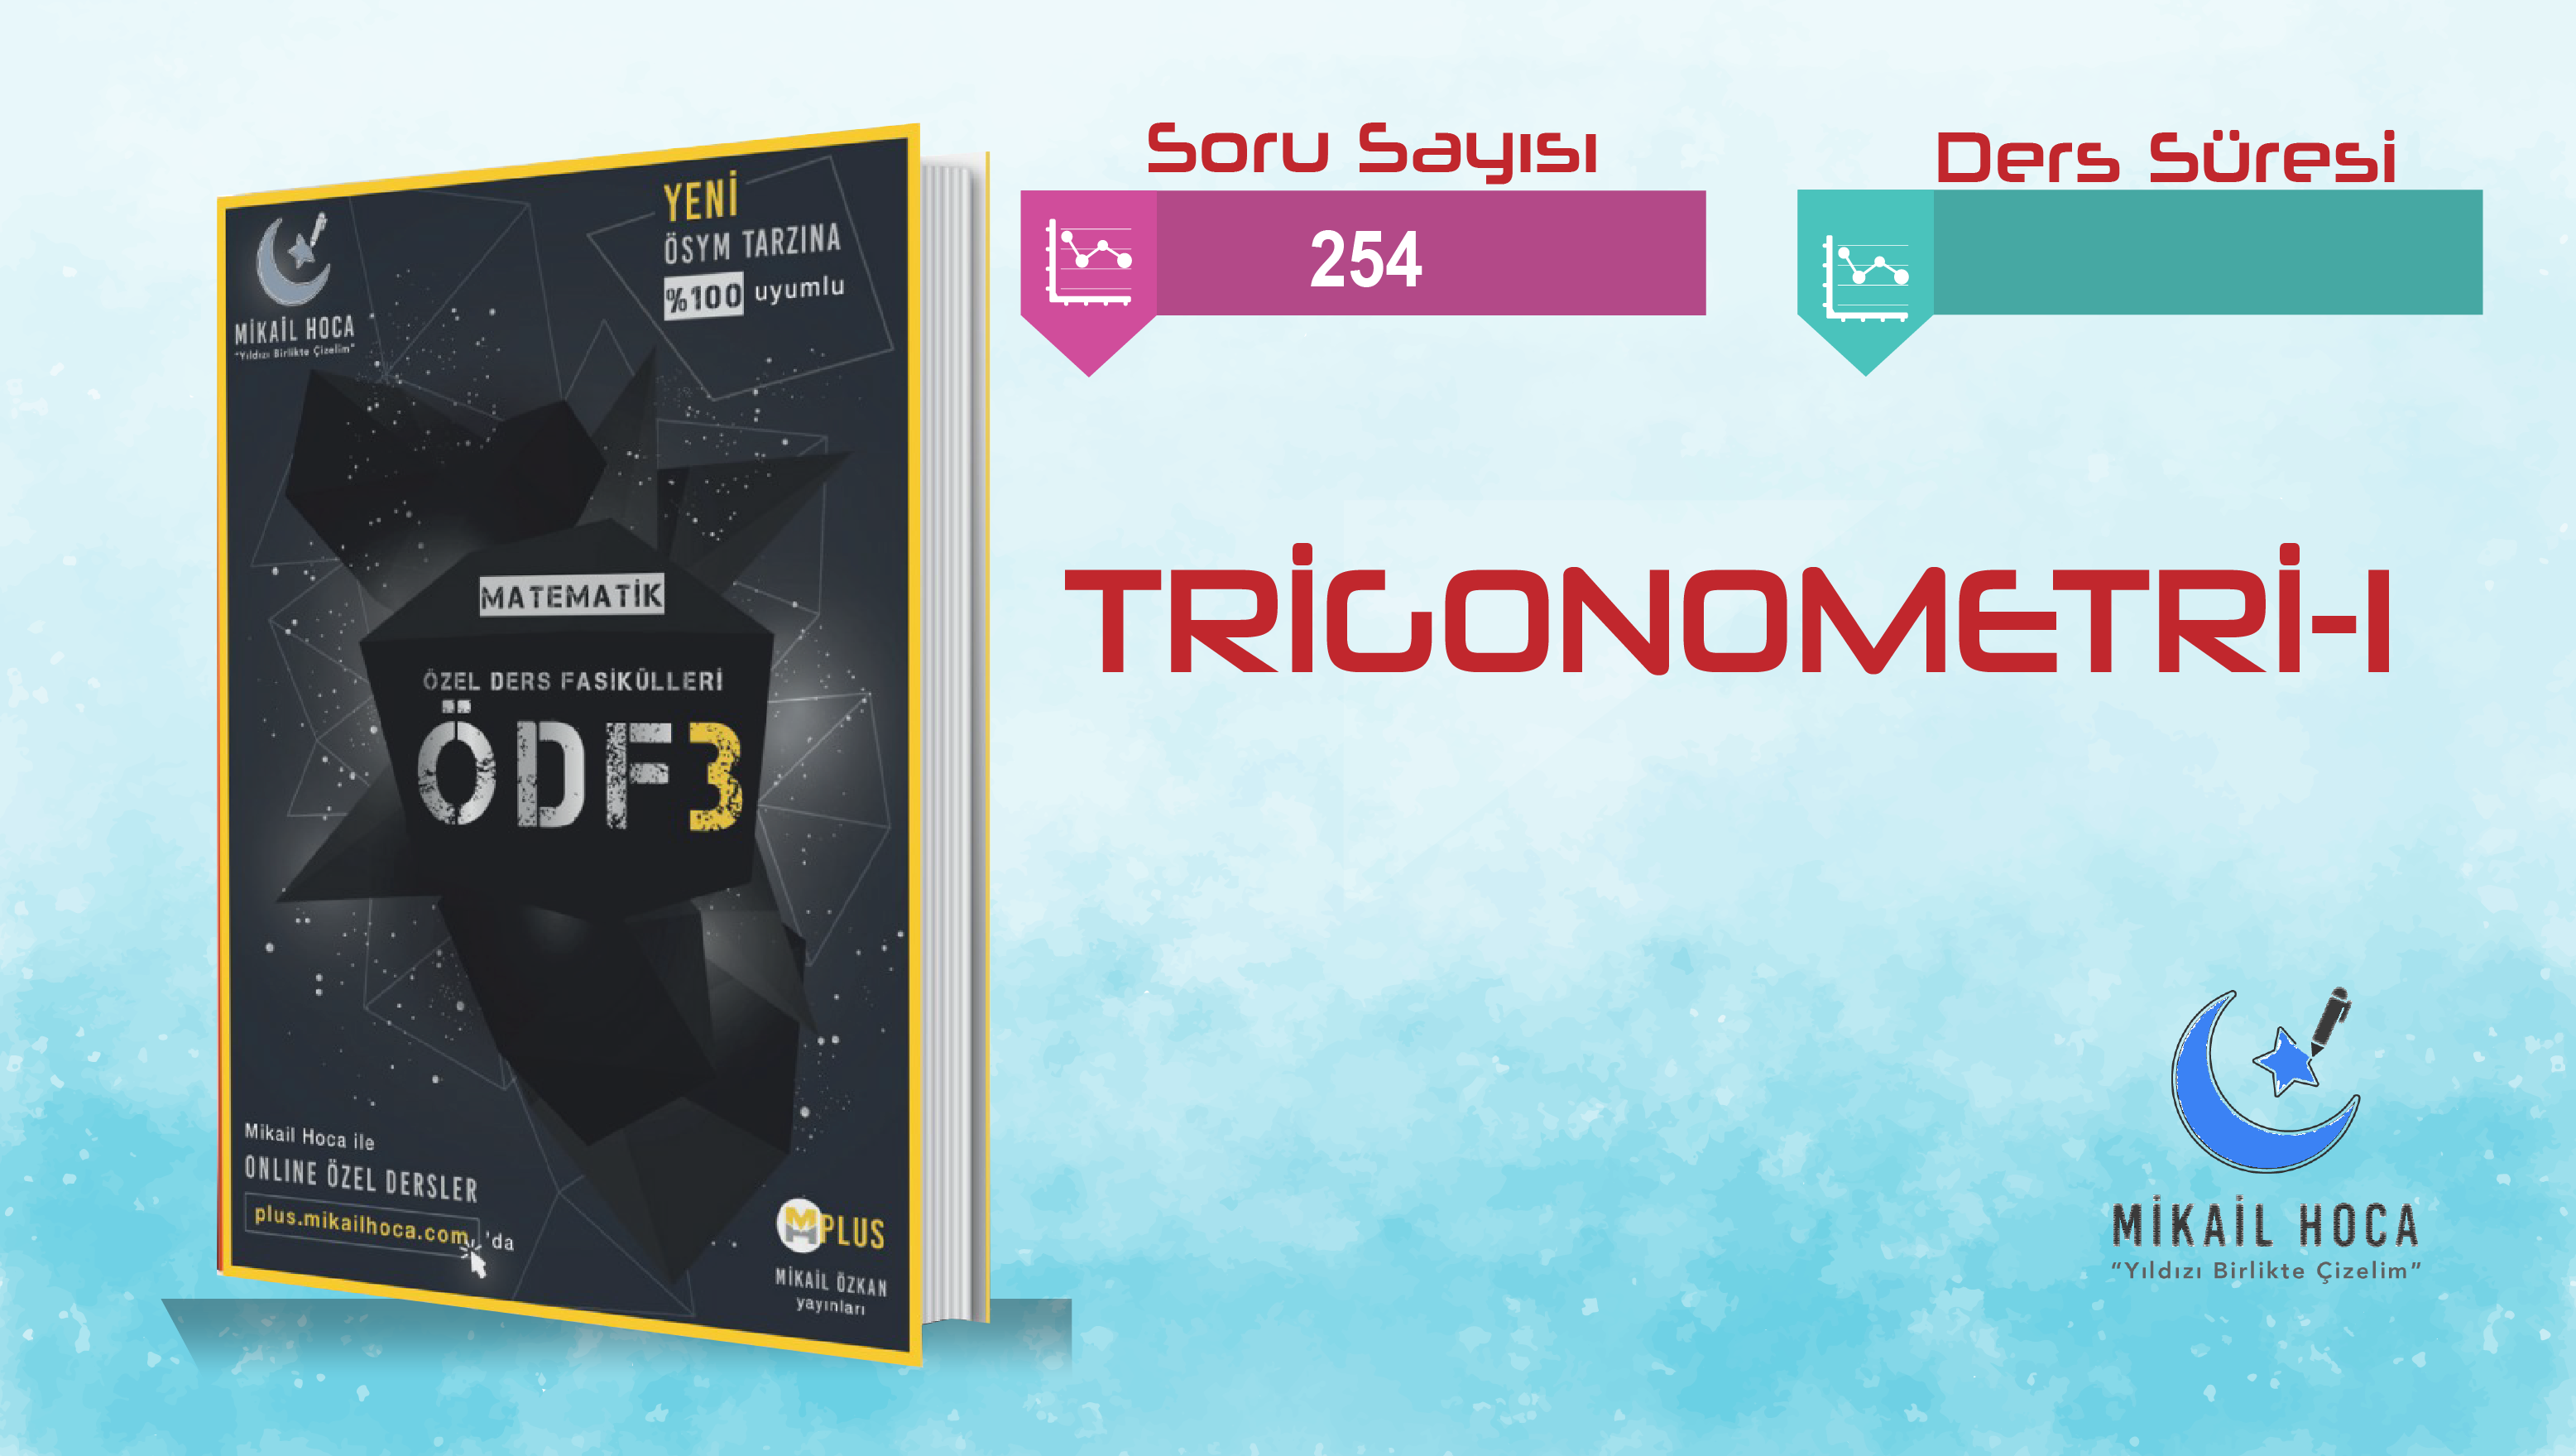 TRİGONOMETRİ 1 ÖDF-3